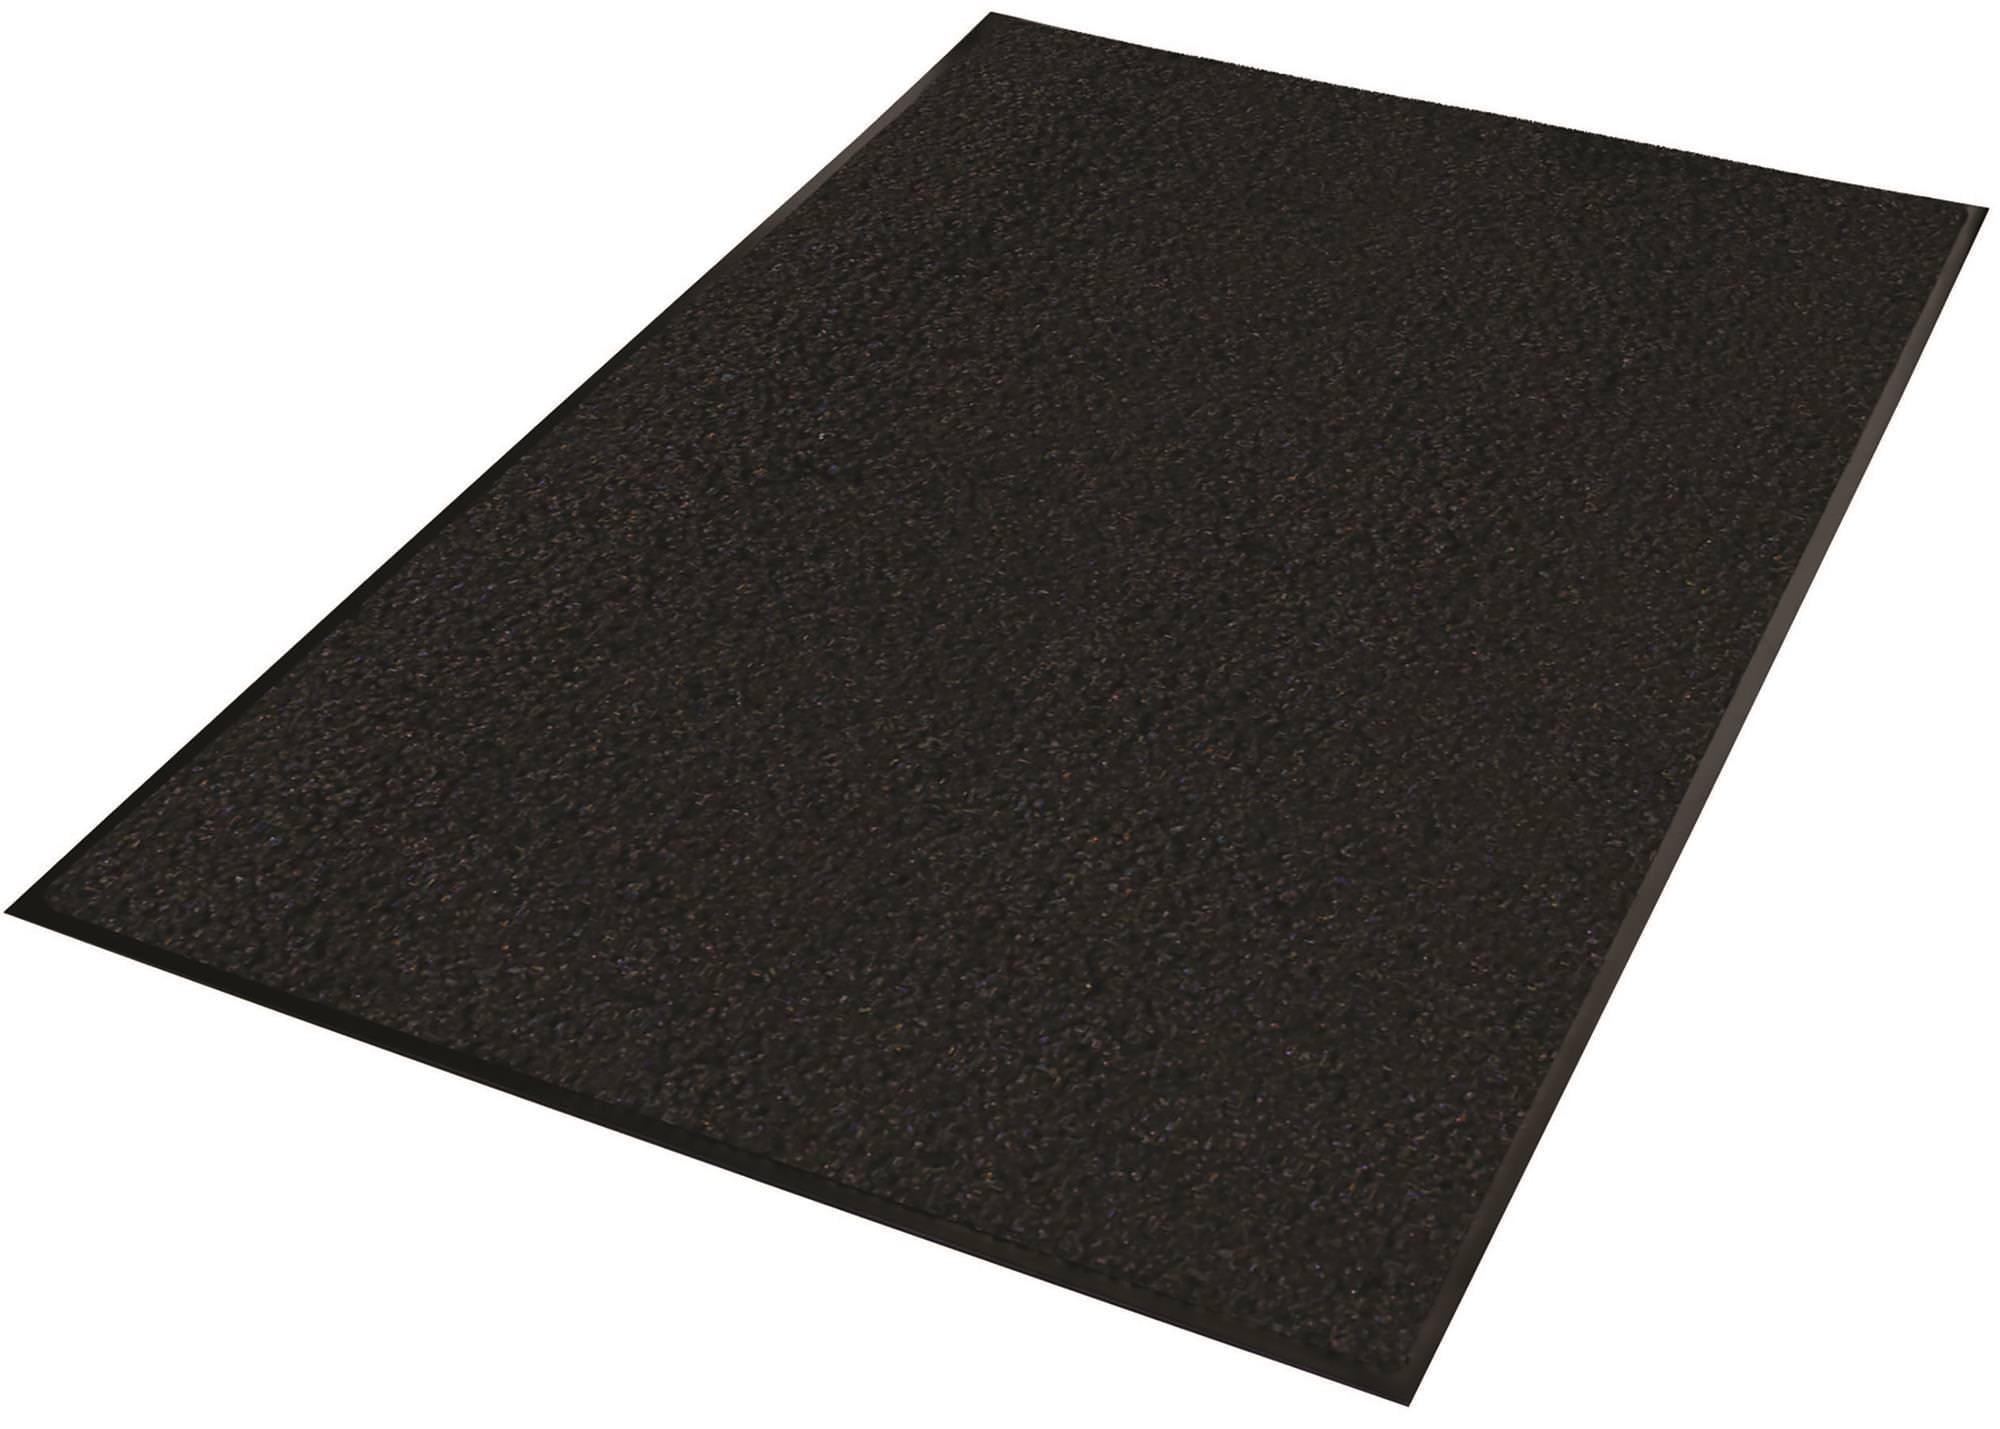 Black Guardian Platinum Series Indoor Wiper Floor Mat 5x10 Rubber with Nylon Carpet 